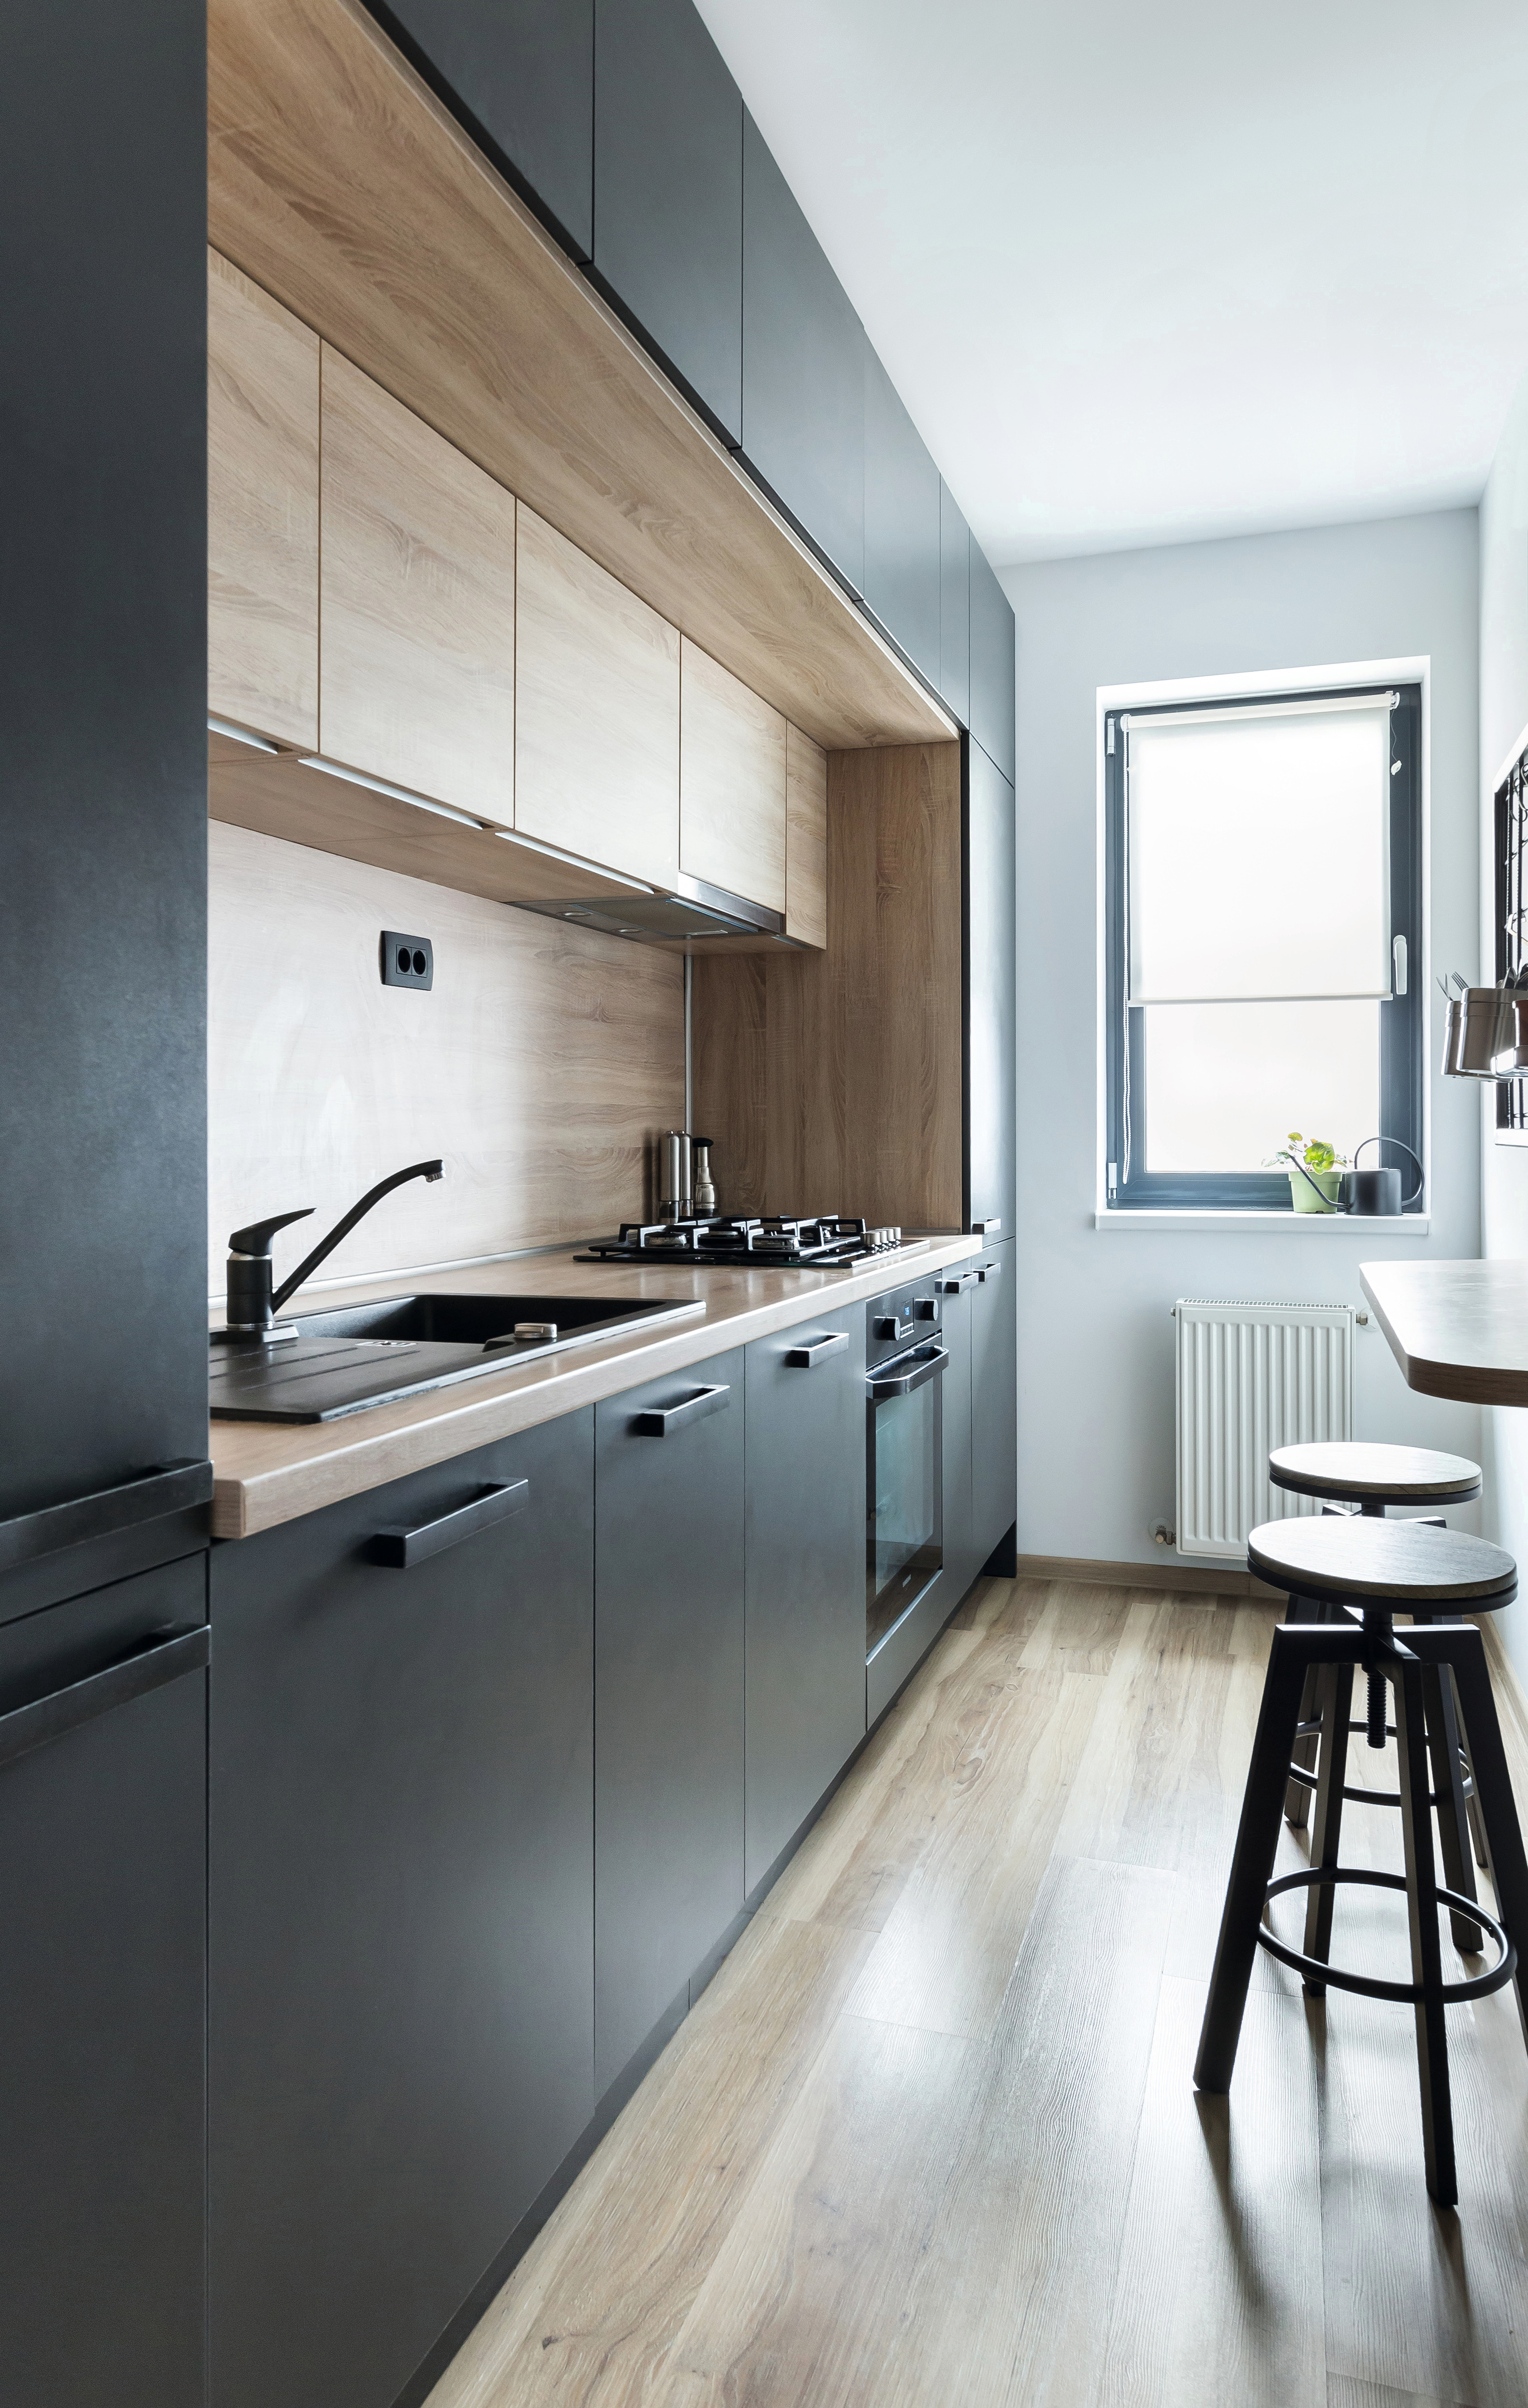 Правильный выбор цвета и геометрическое расположение предметов обстановки придают кухне современный вид.